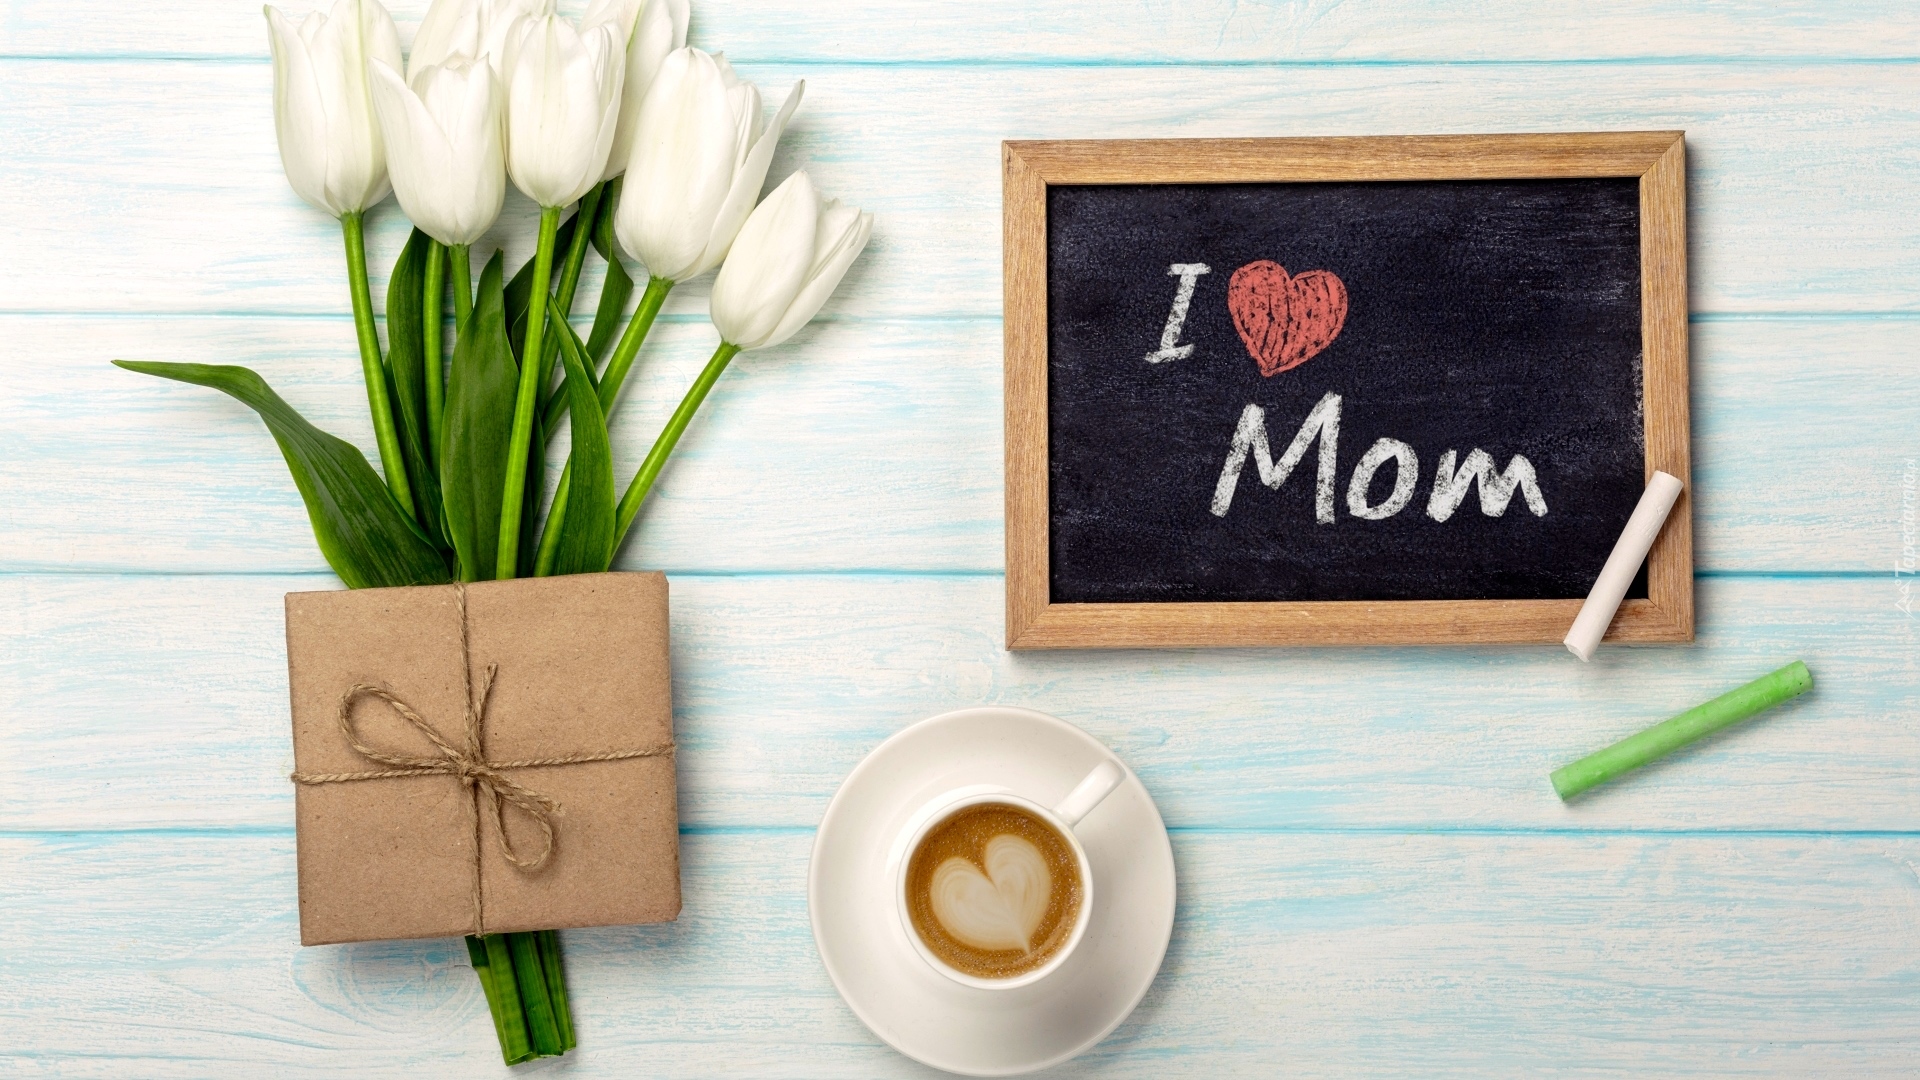 Dzień Matki, Tulipany, Filiżanka, Kawa, Prezent, Tabliczka, Napis, Kreda